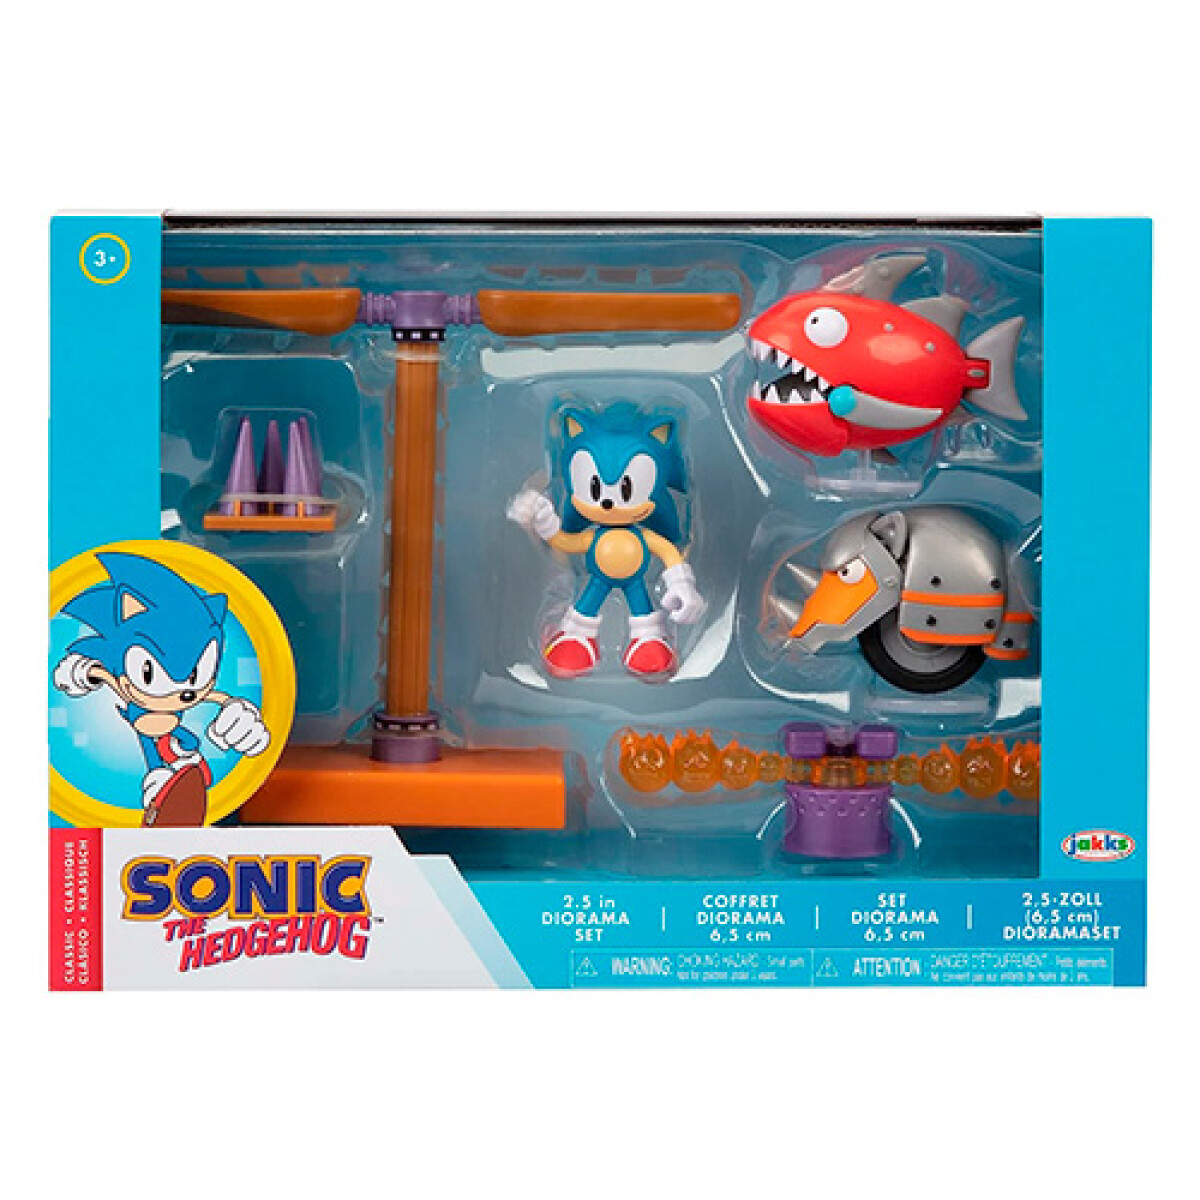 Set Sonic The Hedgehog Clásico 414424 - 001 